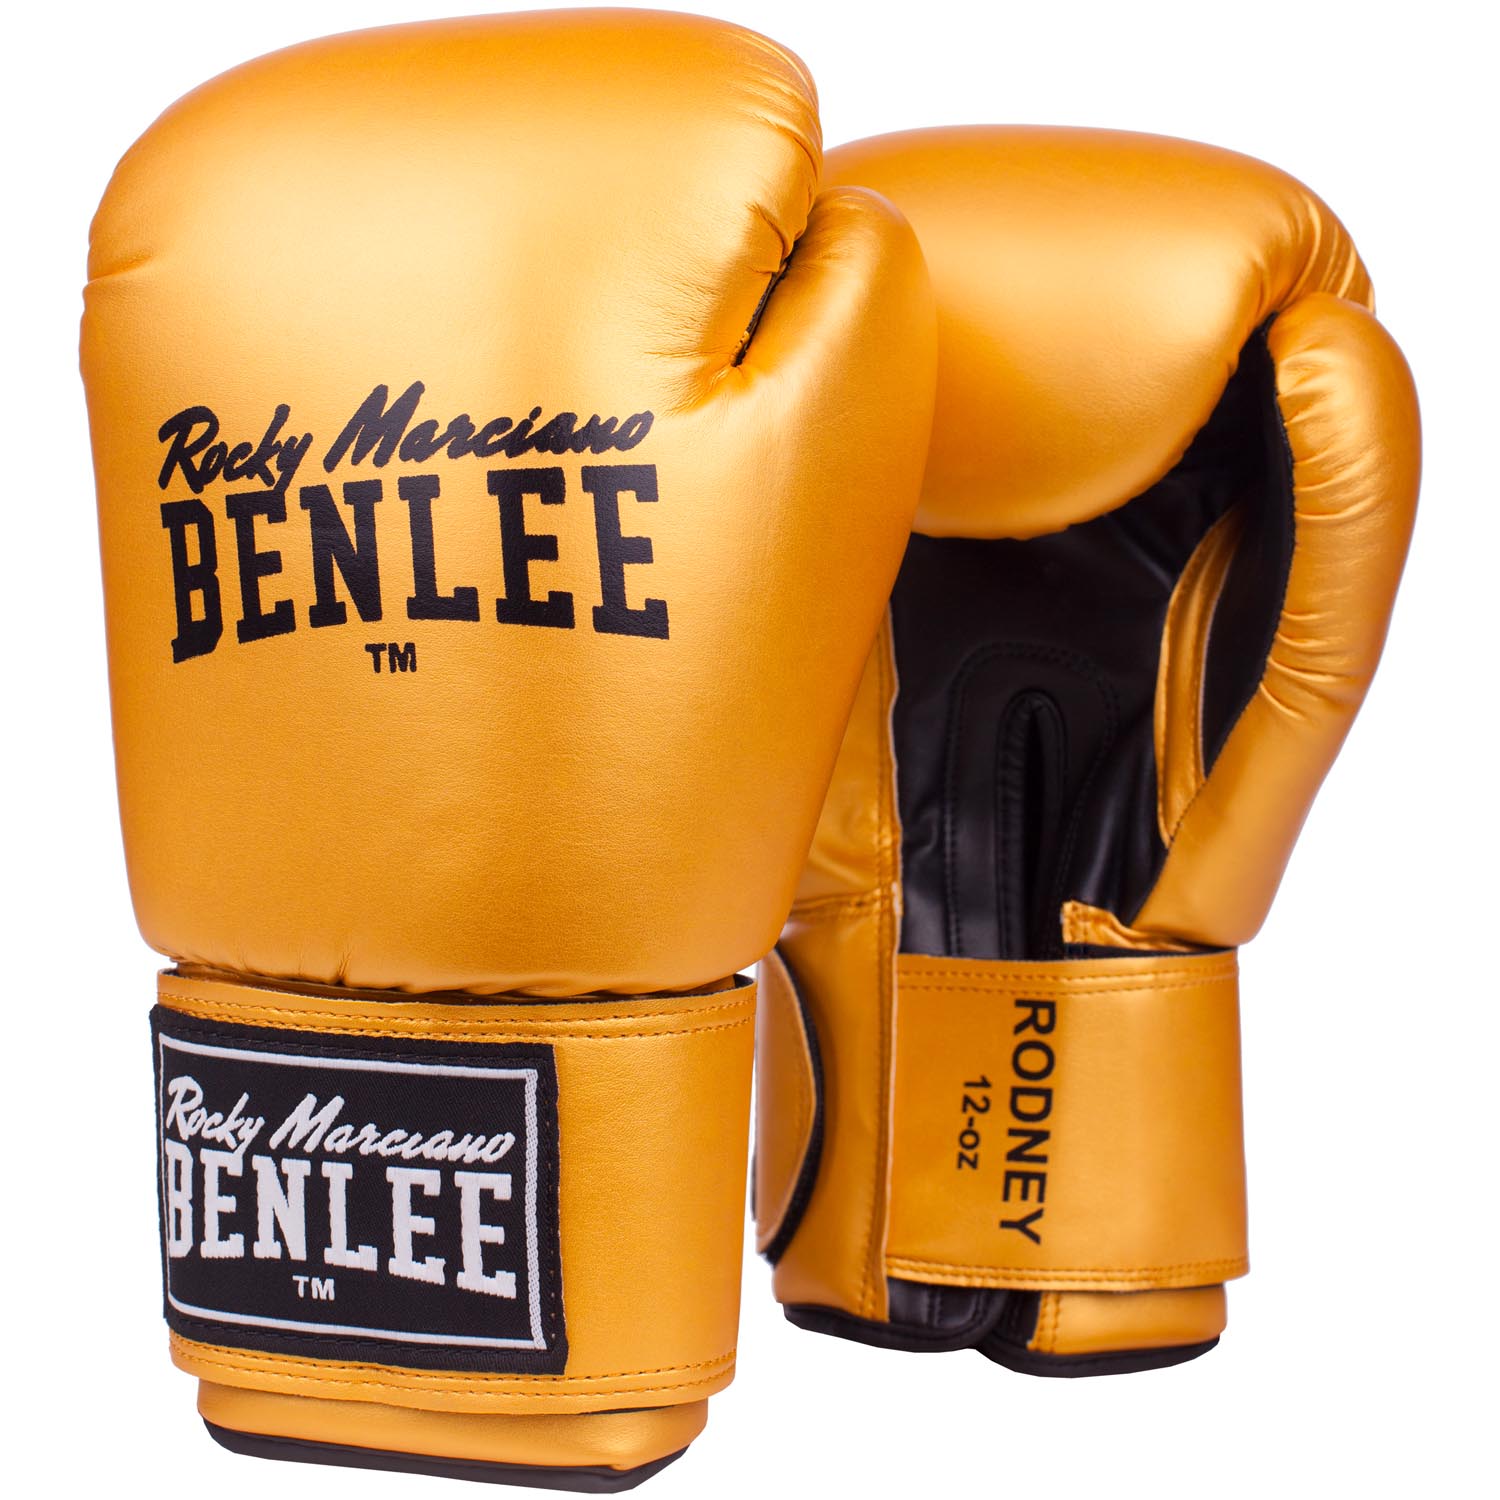 BENLEE Boxhandschuhe, Rodney, gold-schwarz